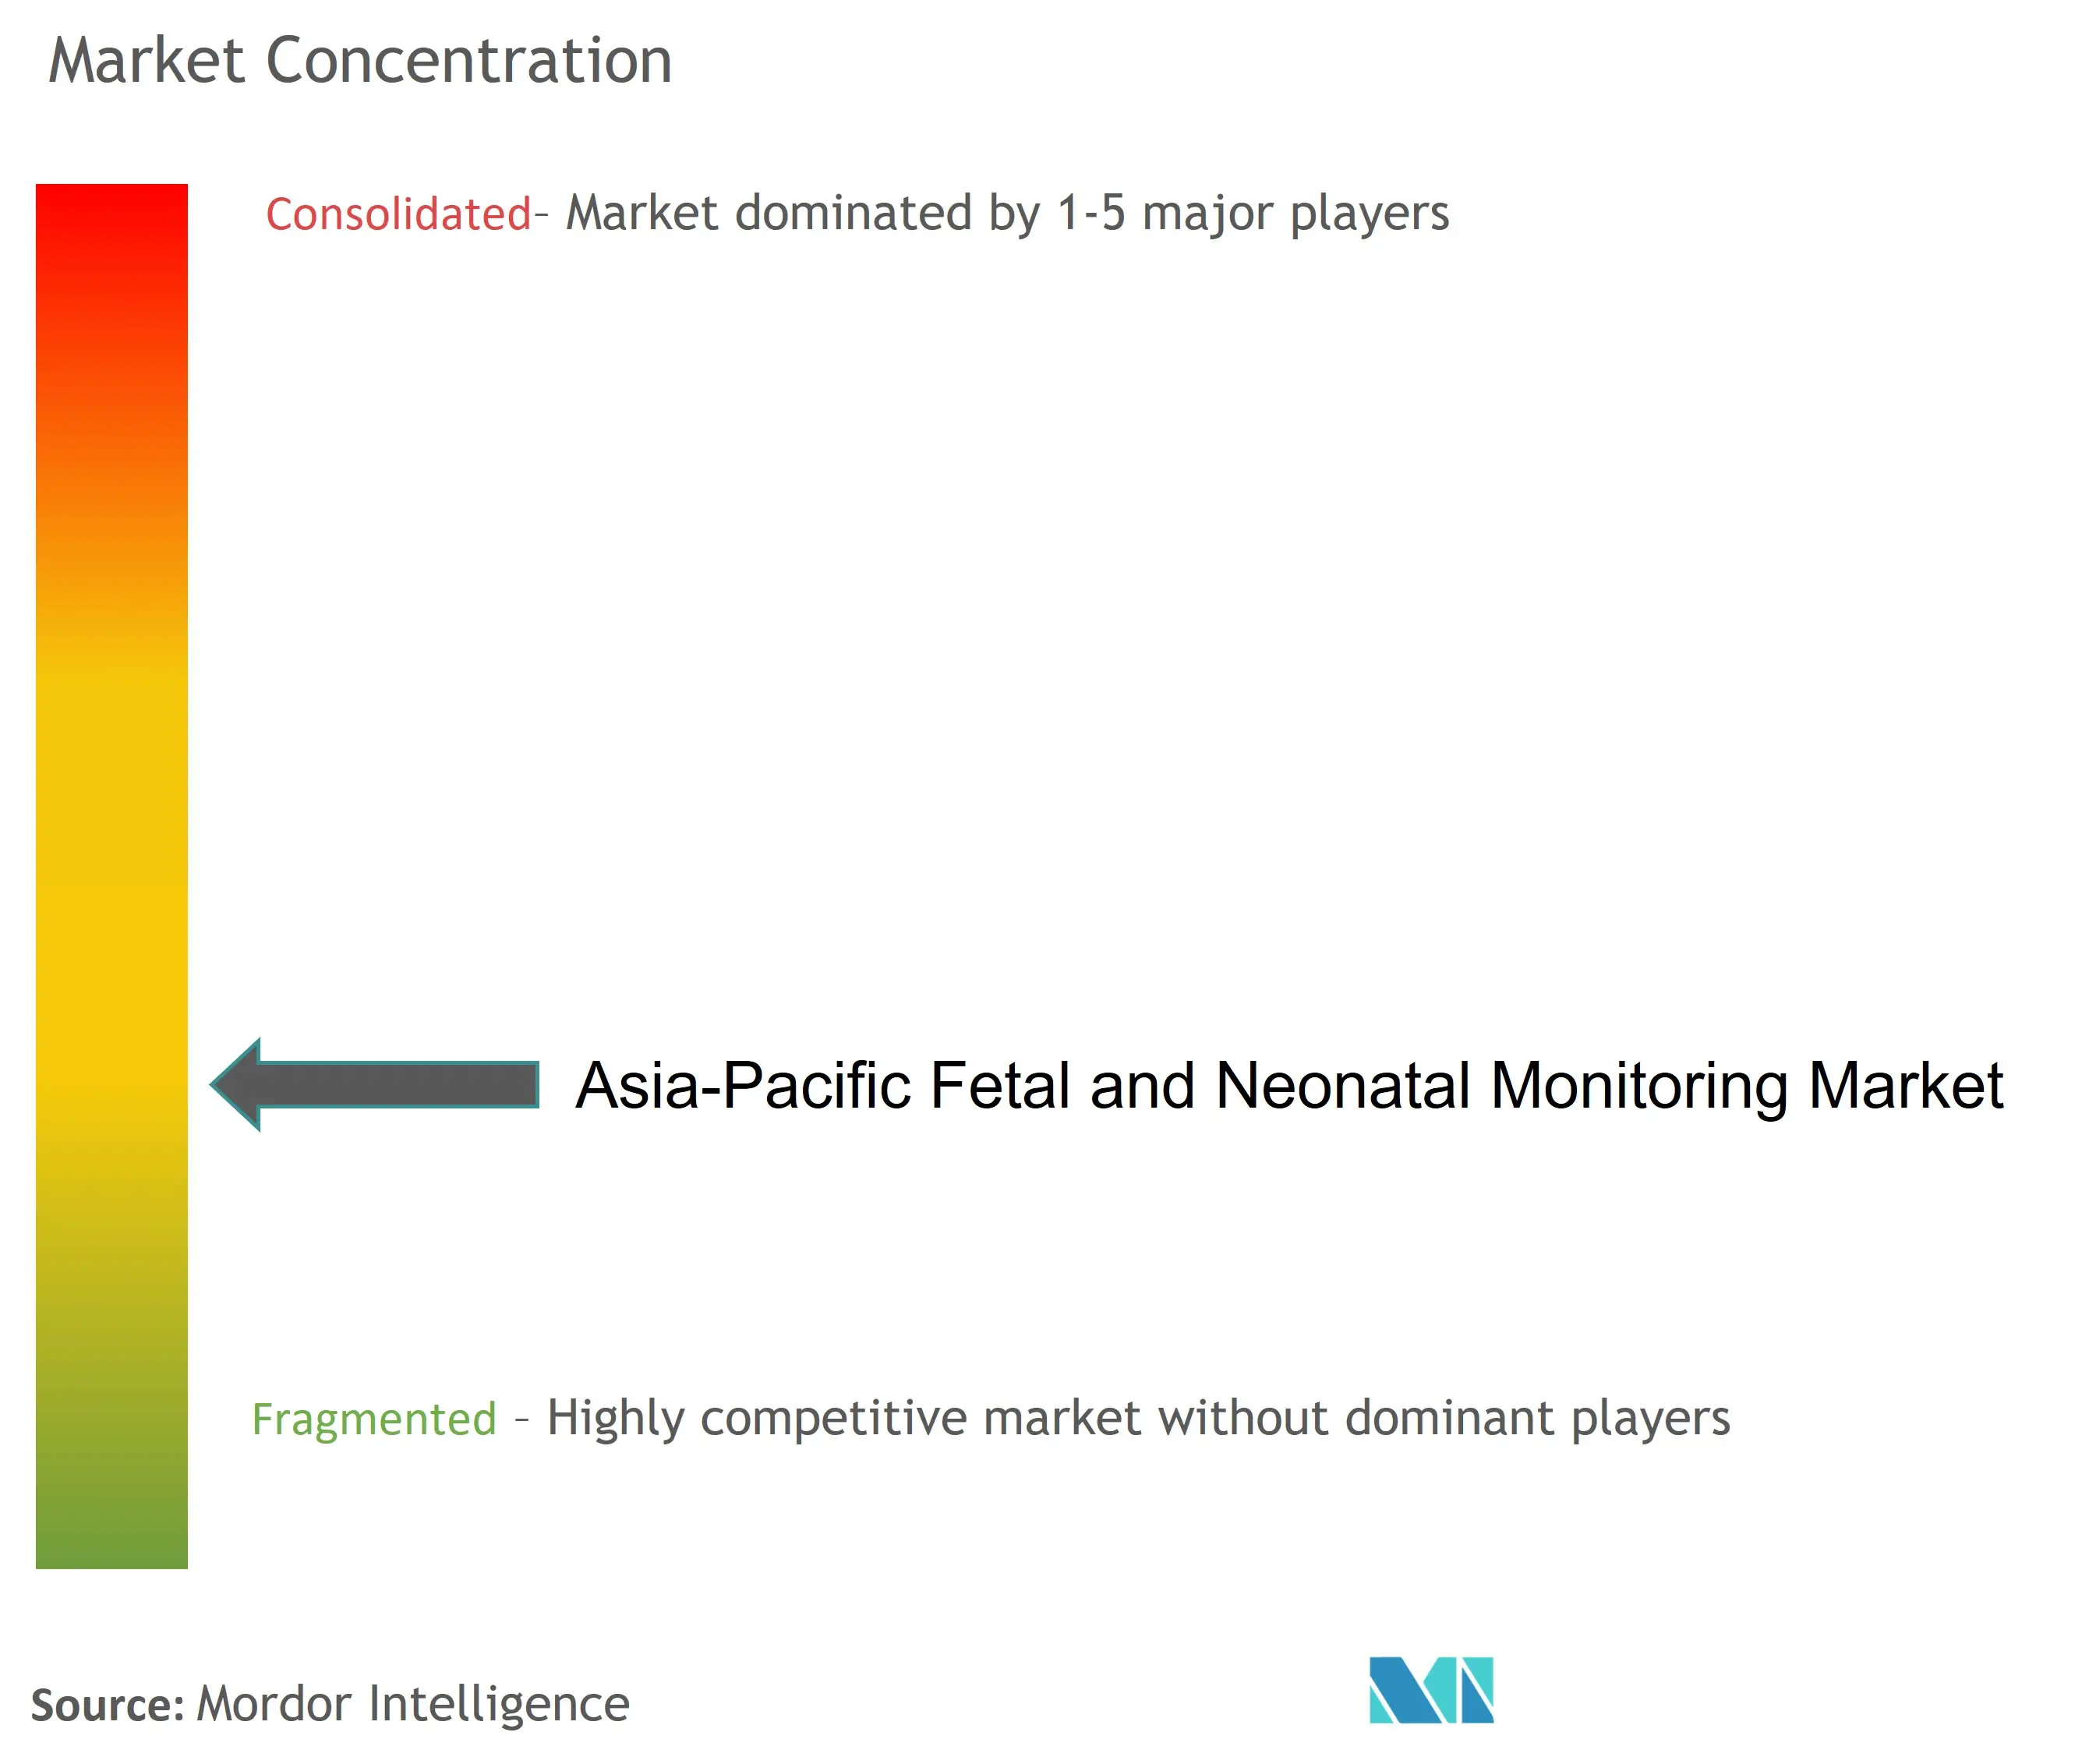 アジア太平洋地域の胎児・新生児モニタリング市場の集中度